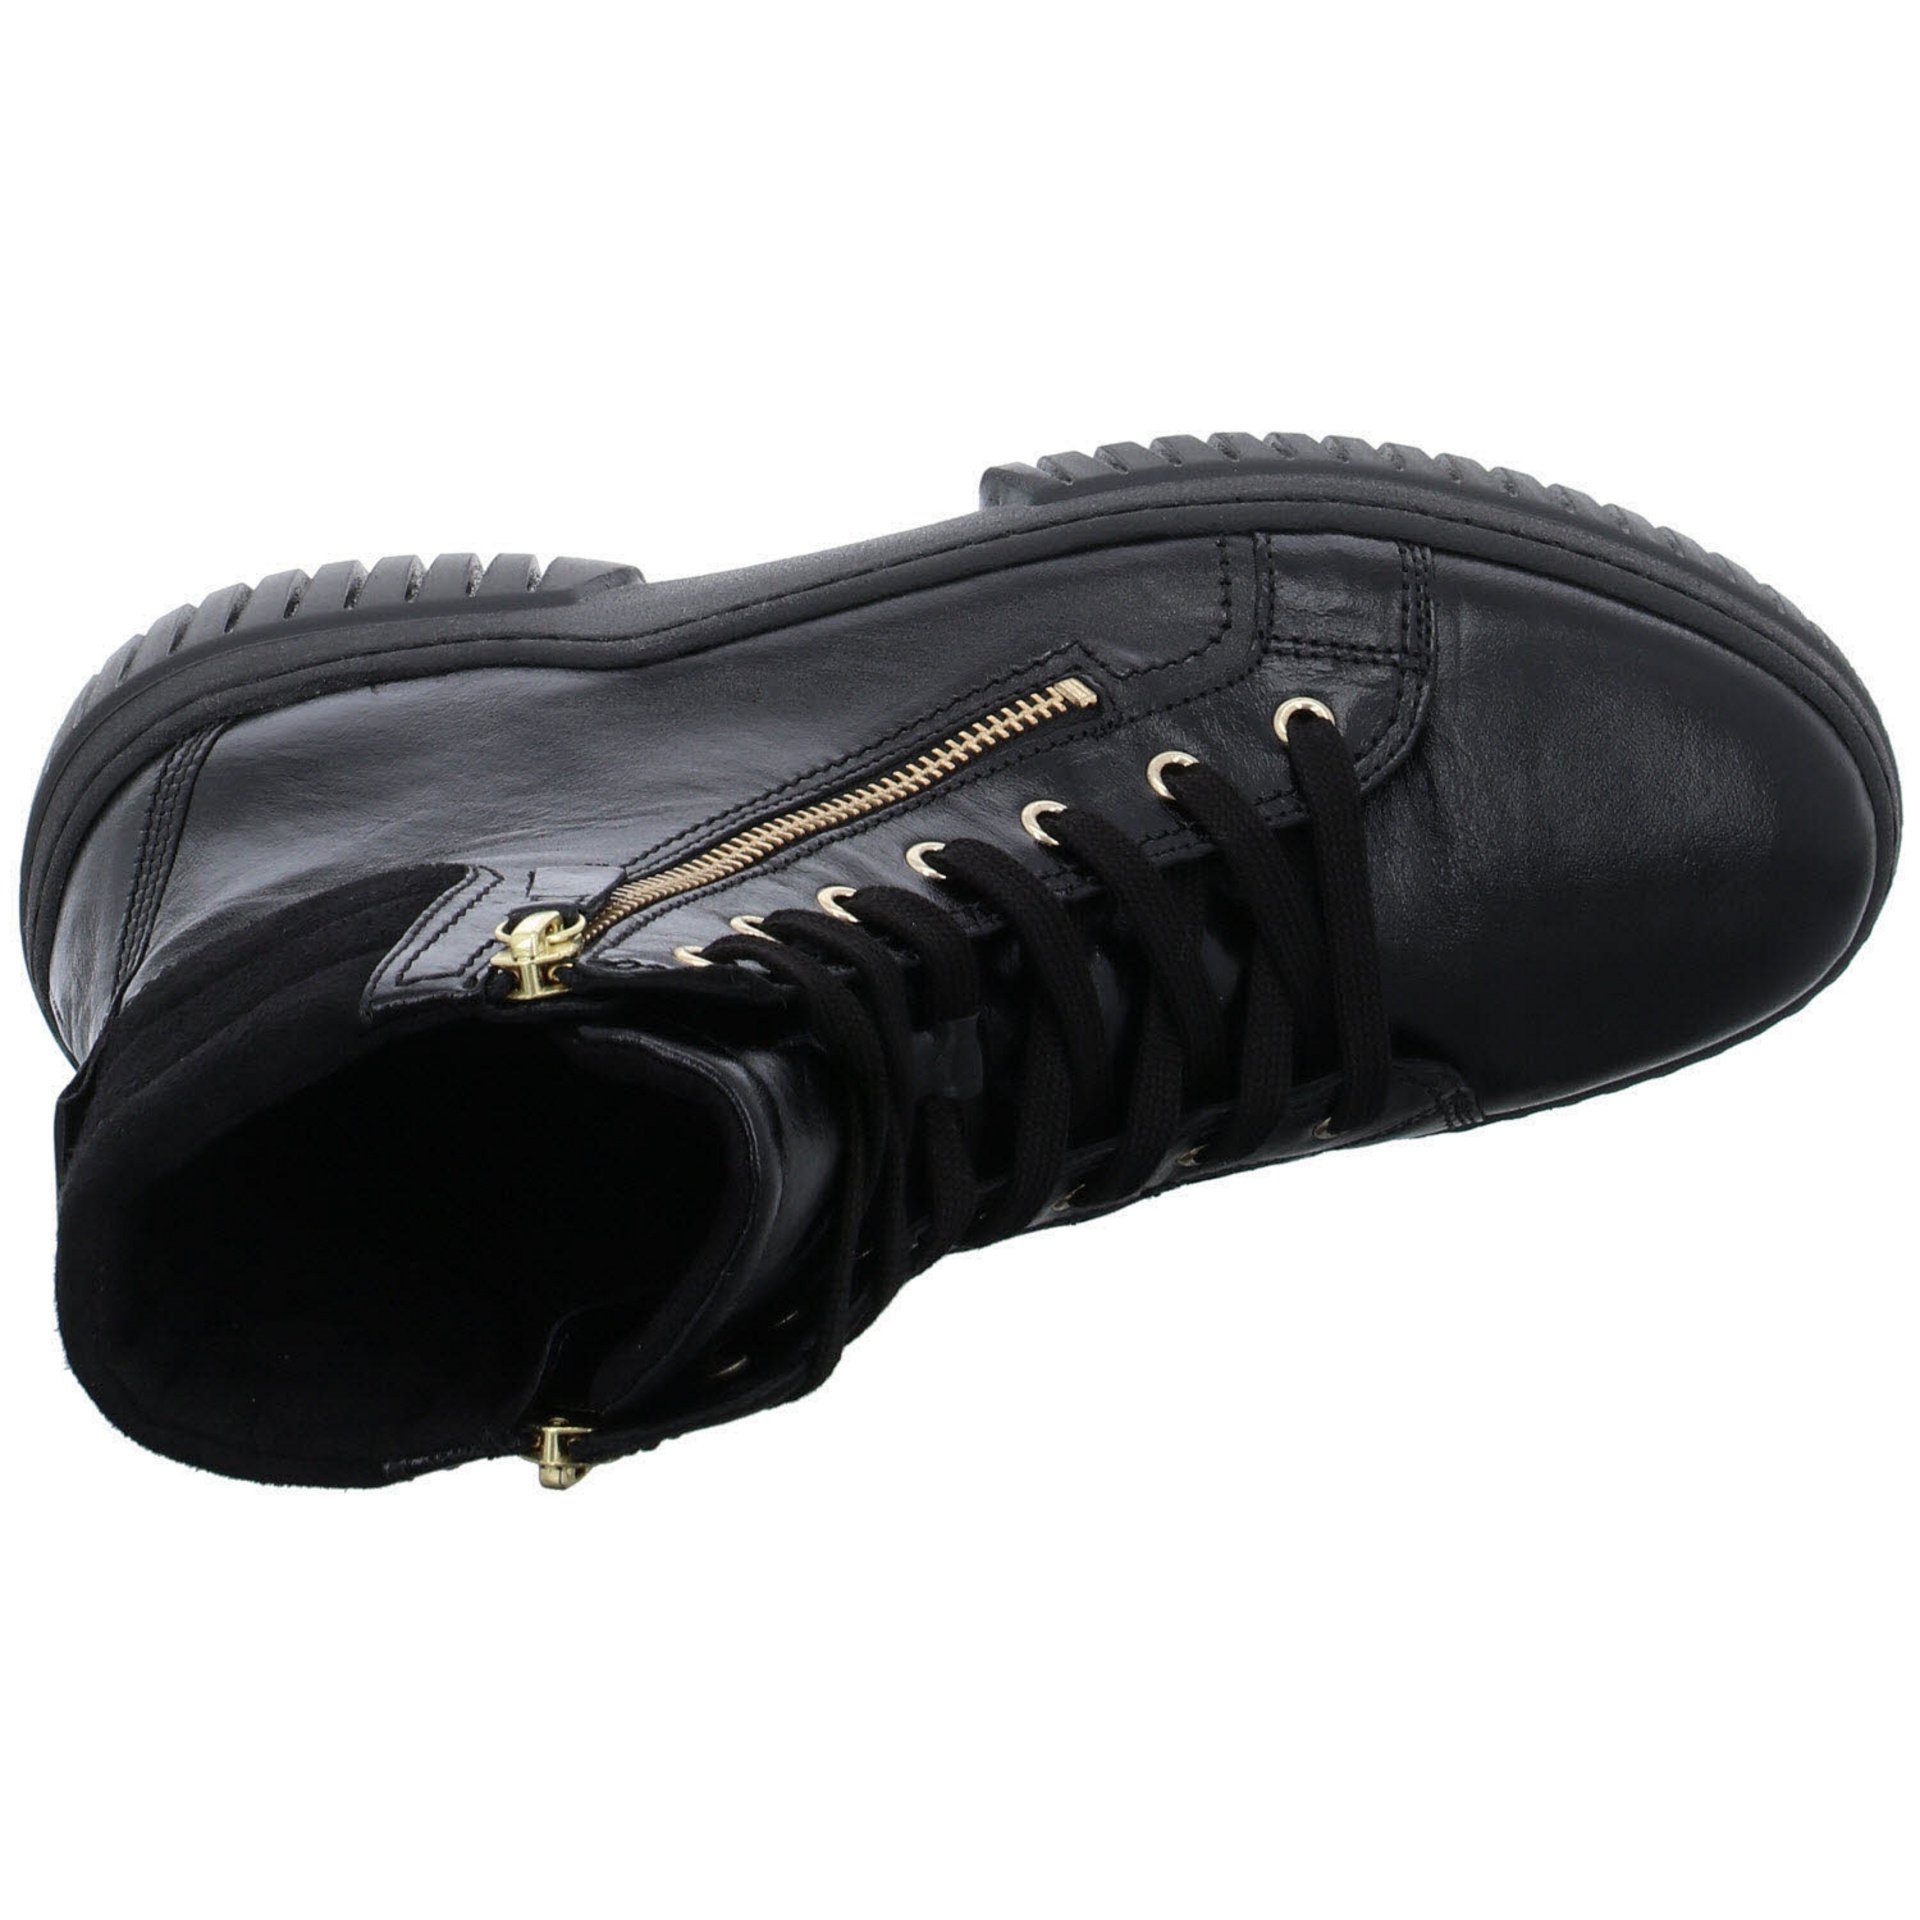 Glattleder schwarz Boots Schnürstiefel Gabor Stiefeletten Damen Freizeit Elegant Schuhe (gold)